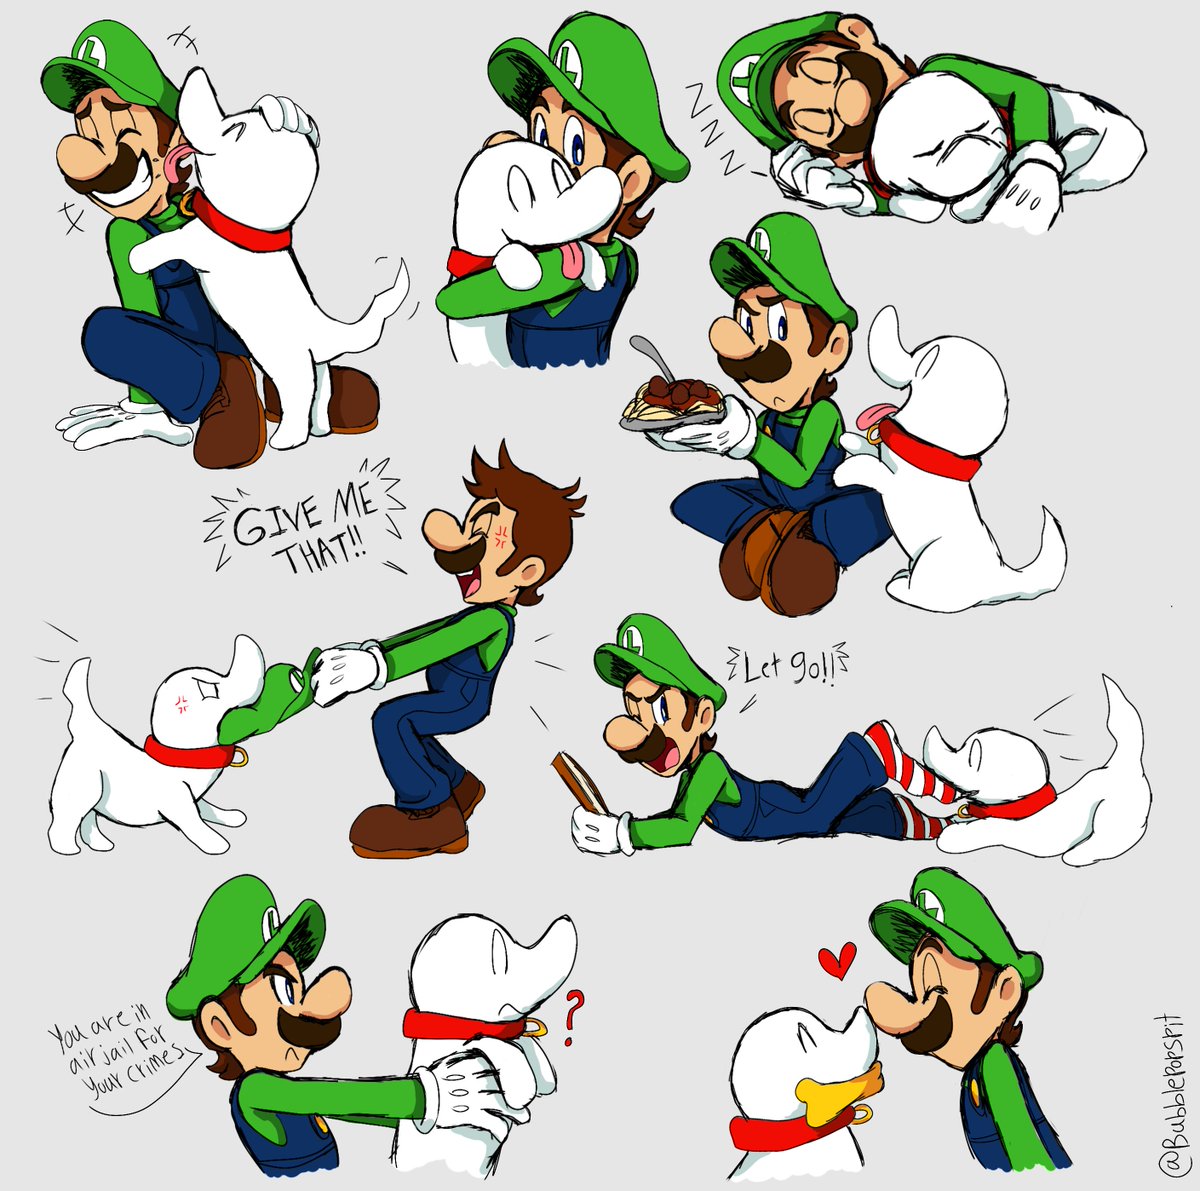 Happiness is a warm Polterpup 🐶👻💕

#SuperMario #Luigi #Polterpup #Nintendo #Fanart